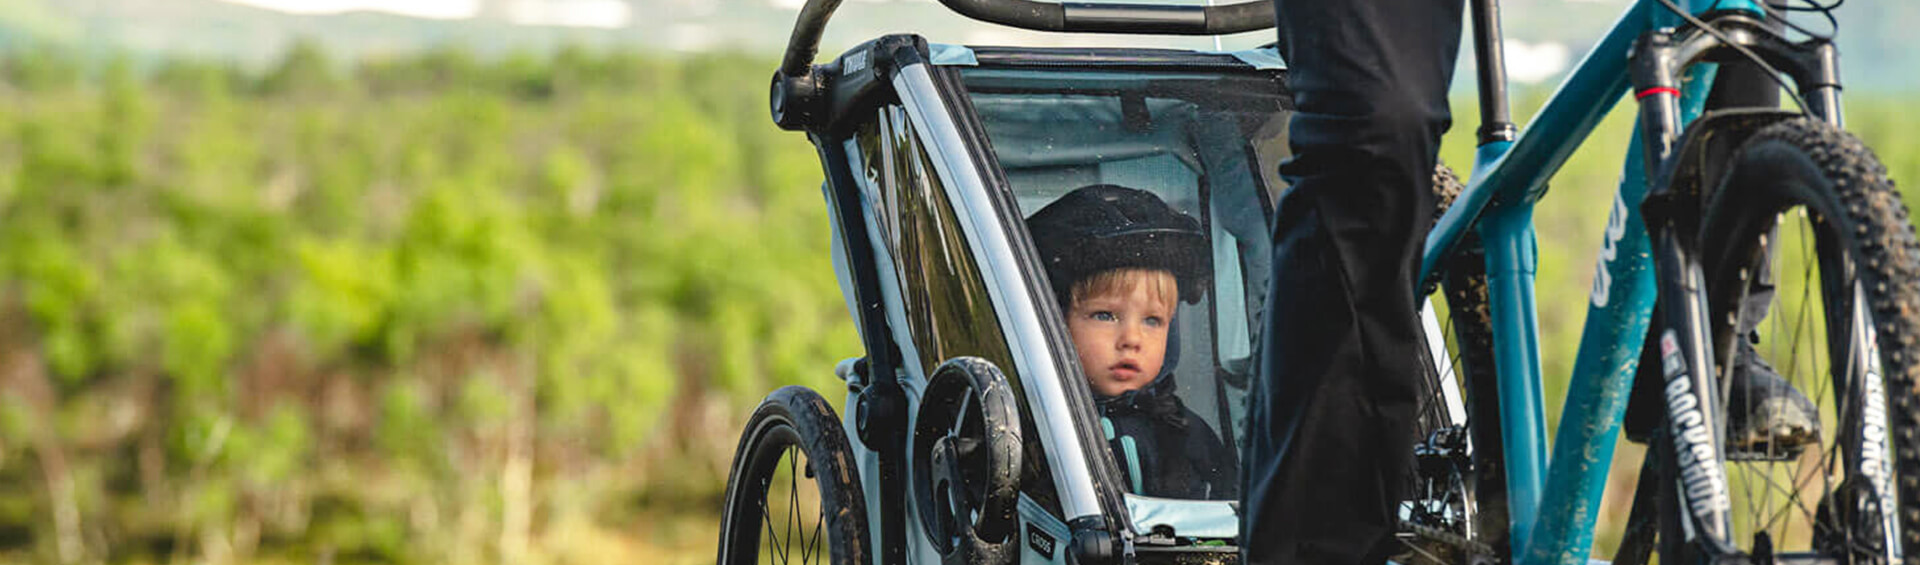 Kinderanhänger vs. Kindersitz - Fahrrad XXL Blog